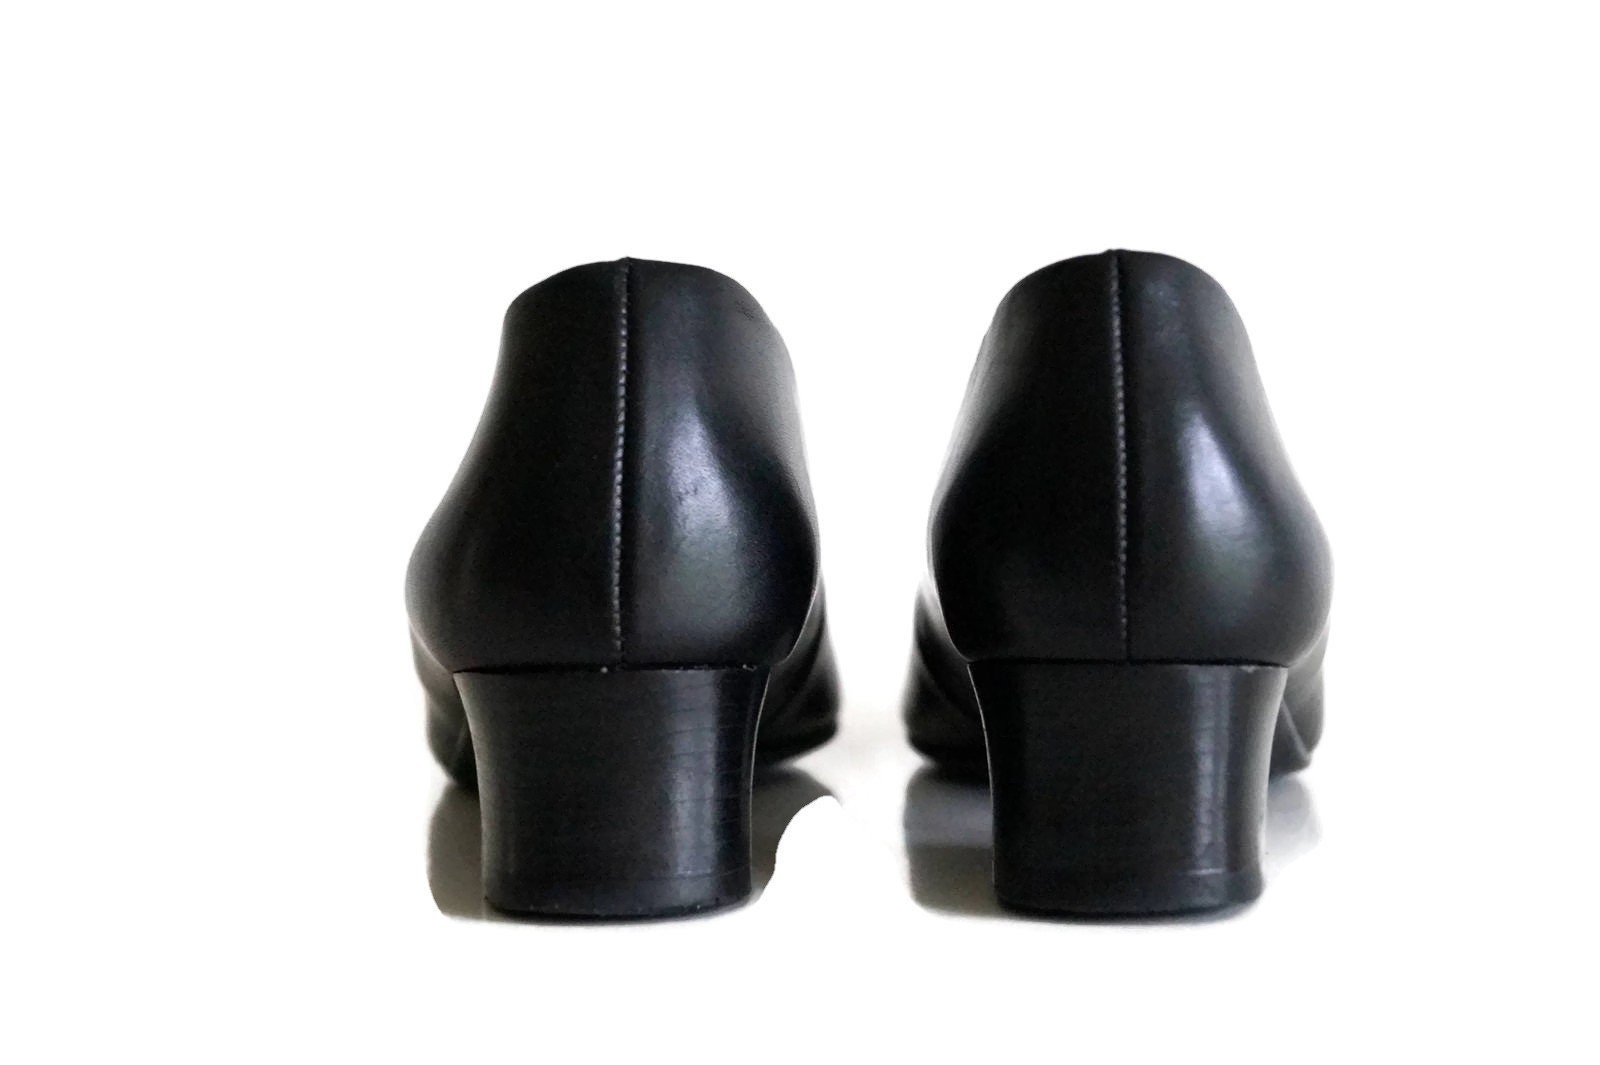 ECCO shoes Womens leather shoes black color classic shoes Eur | Etsy